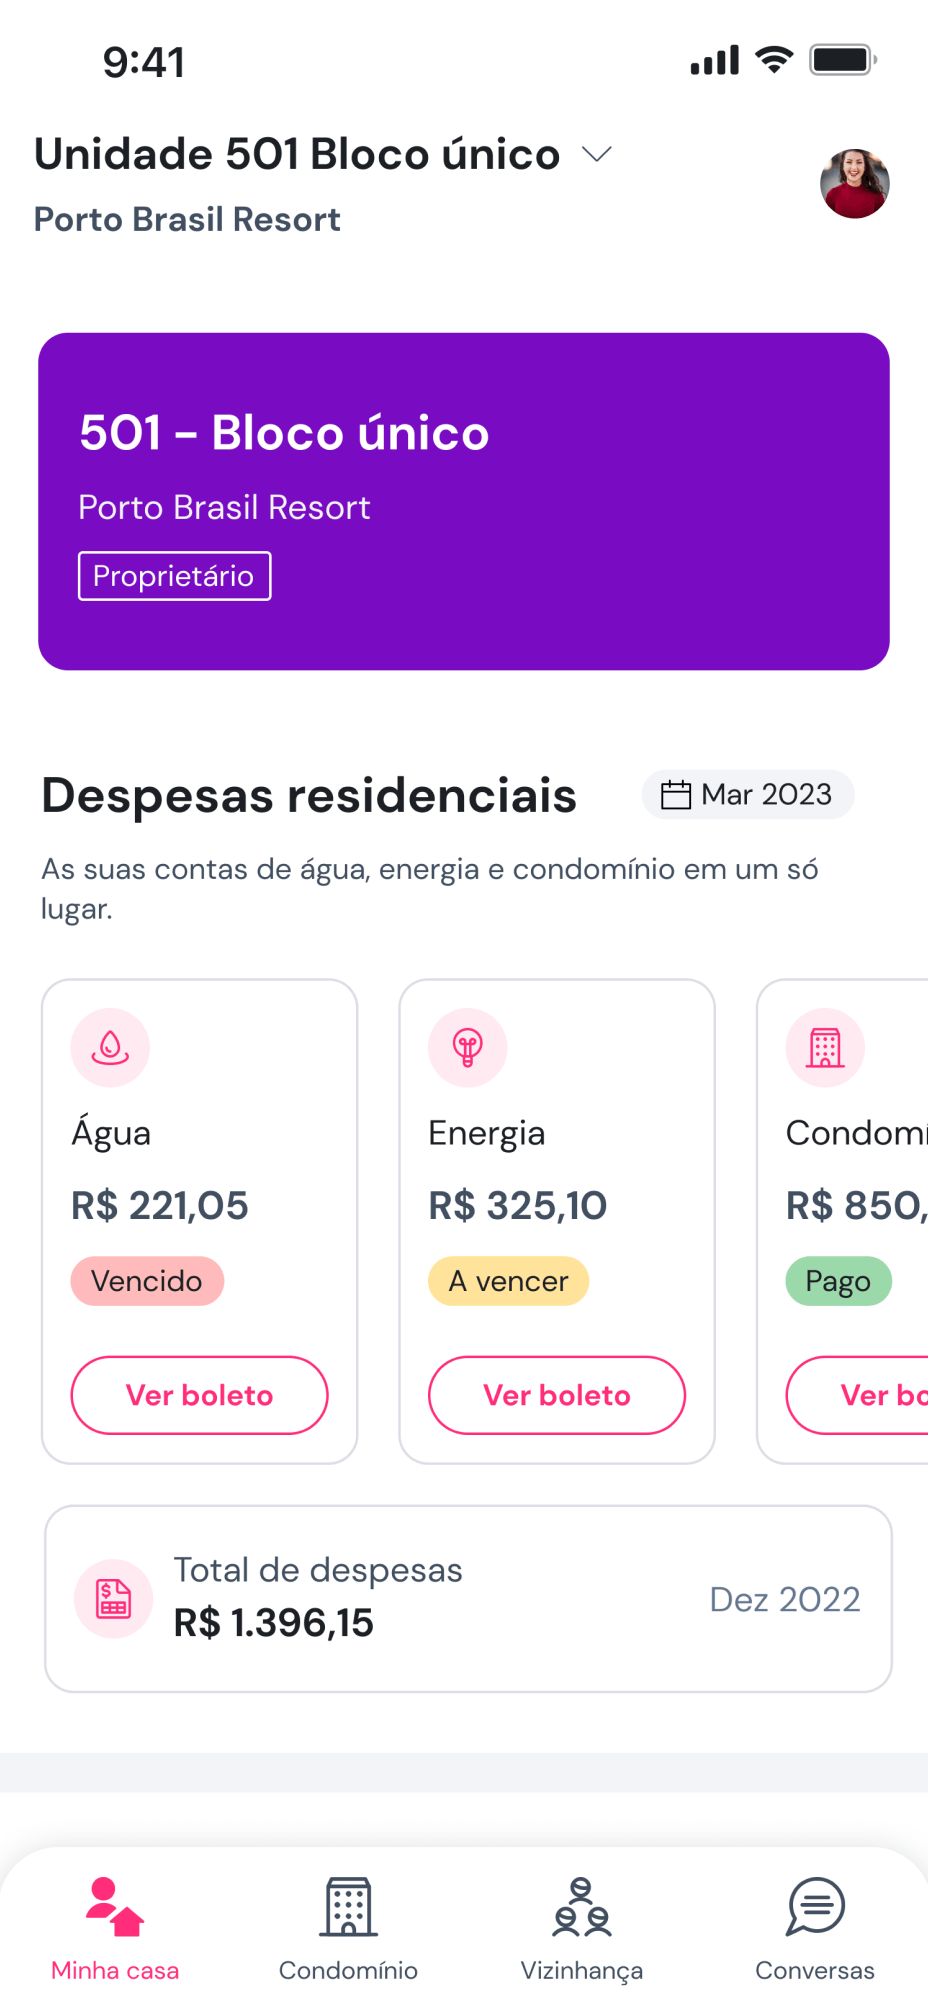 Imagem do aplicativo Gruvi mostrando as funcionalidades do menu Minha Casa, mostrando despesas residenciais e seus status.